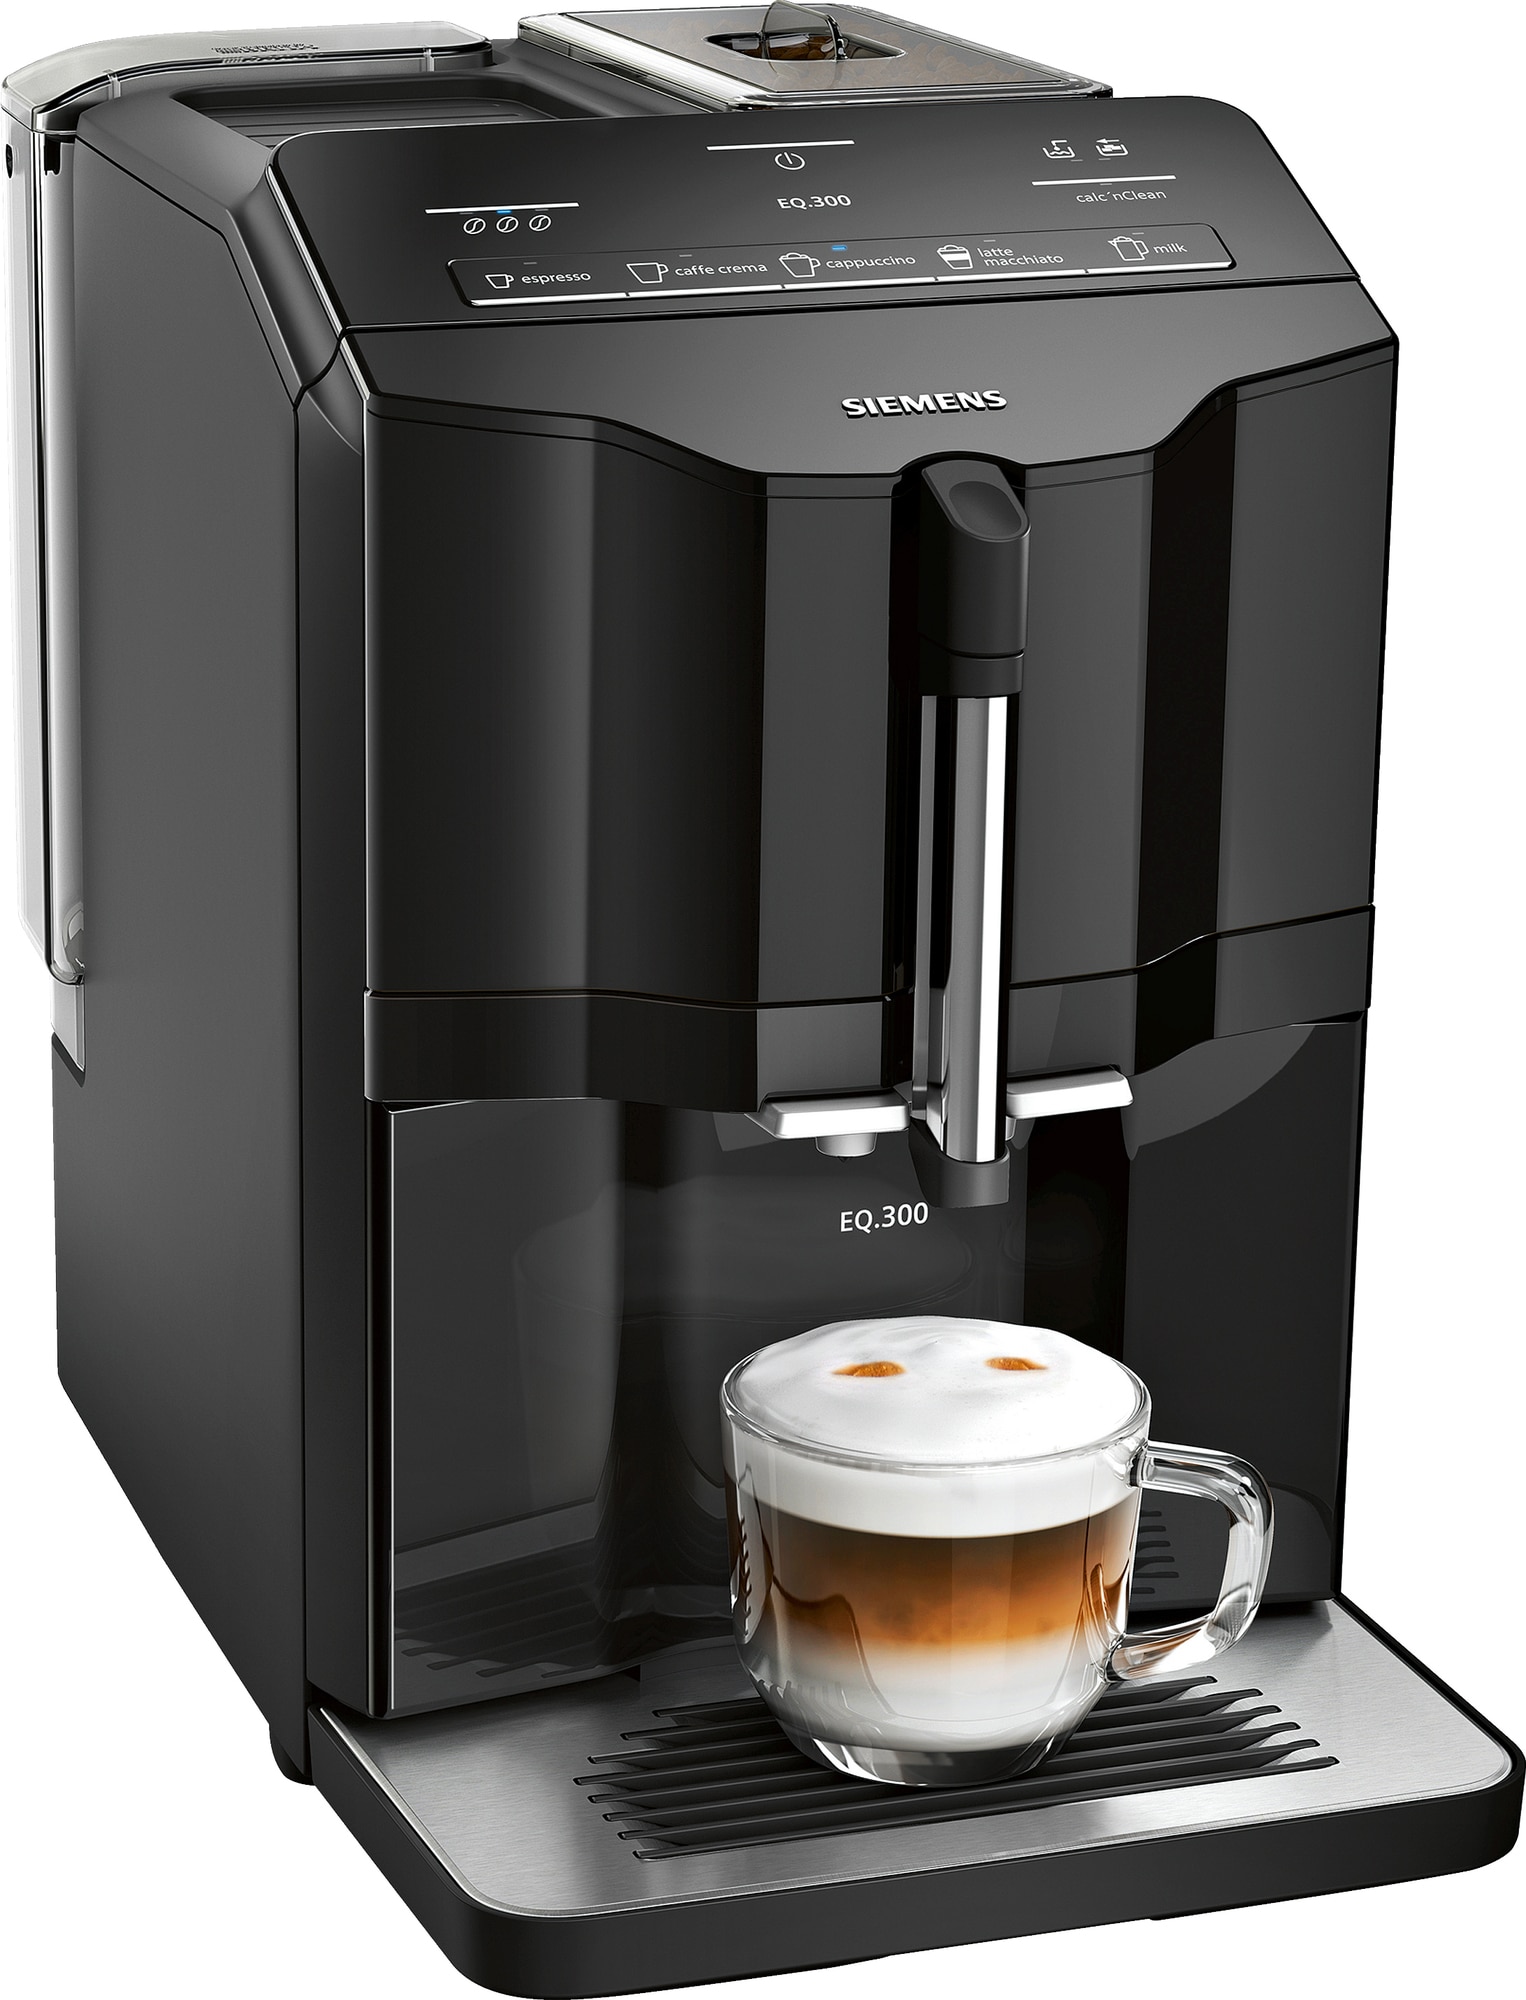 Siemens espressomaskiner | Se de nye 2022 modeller | Espressolover.dk